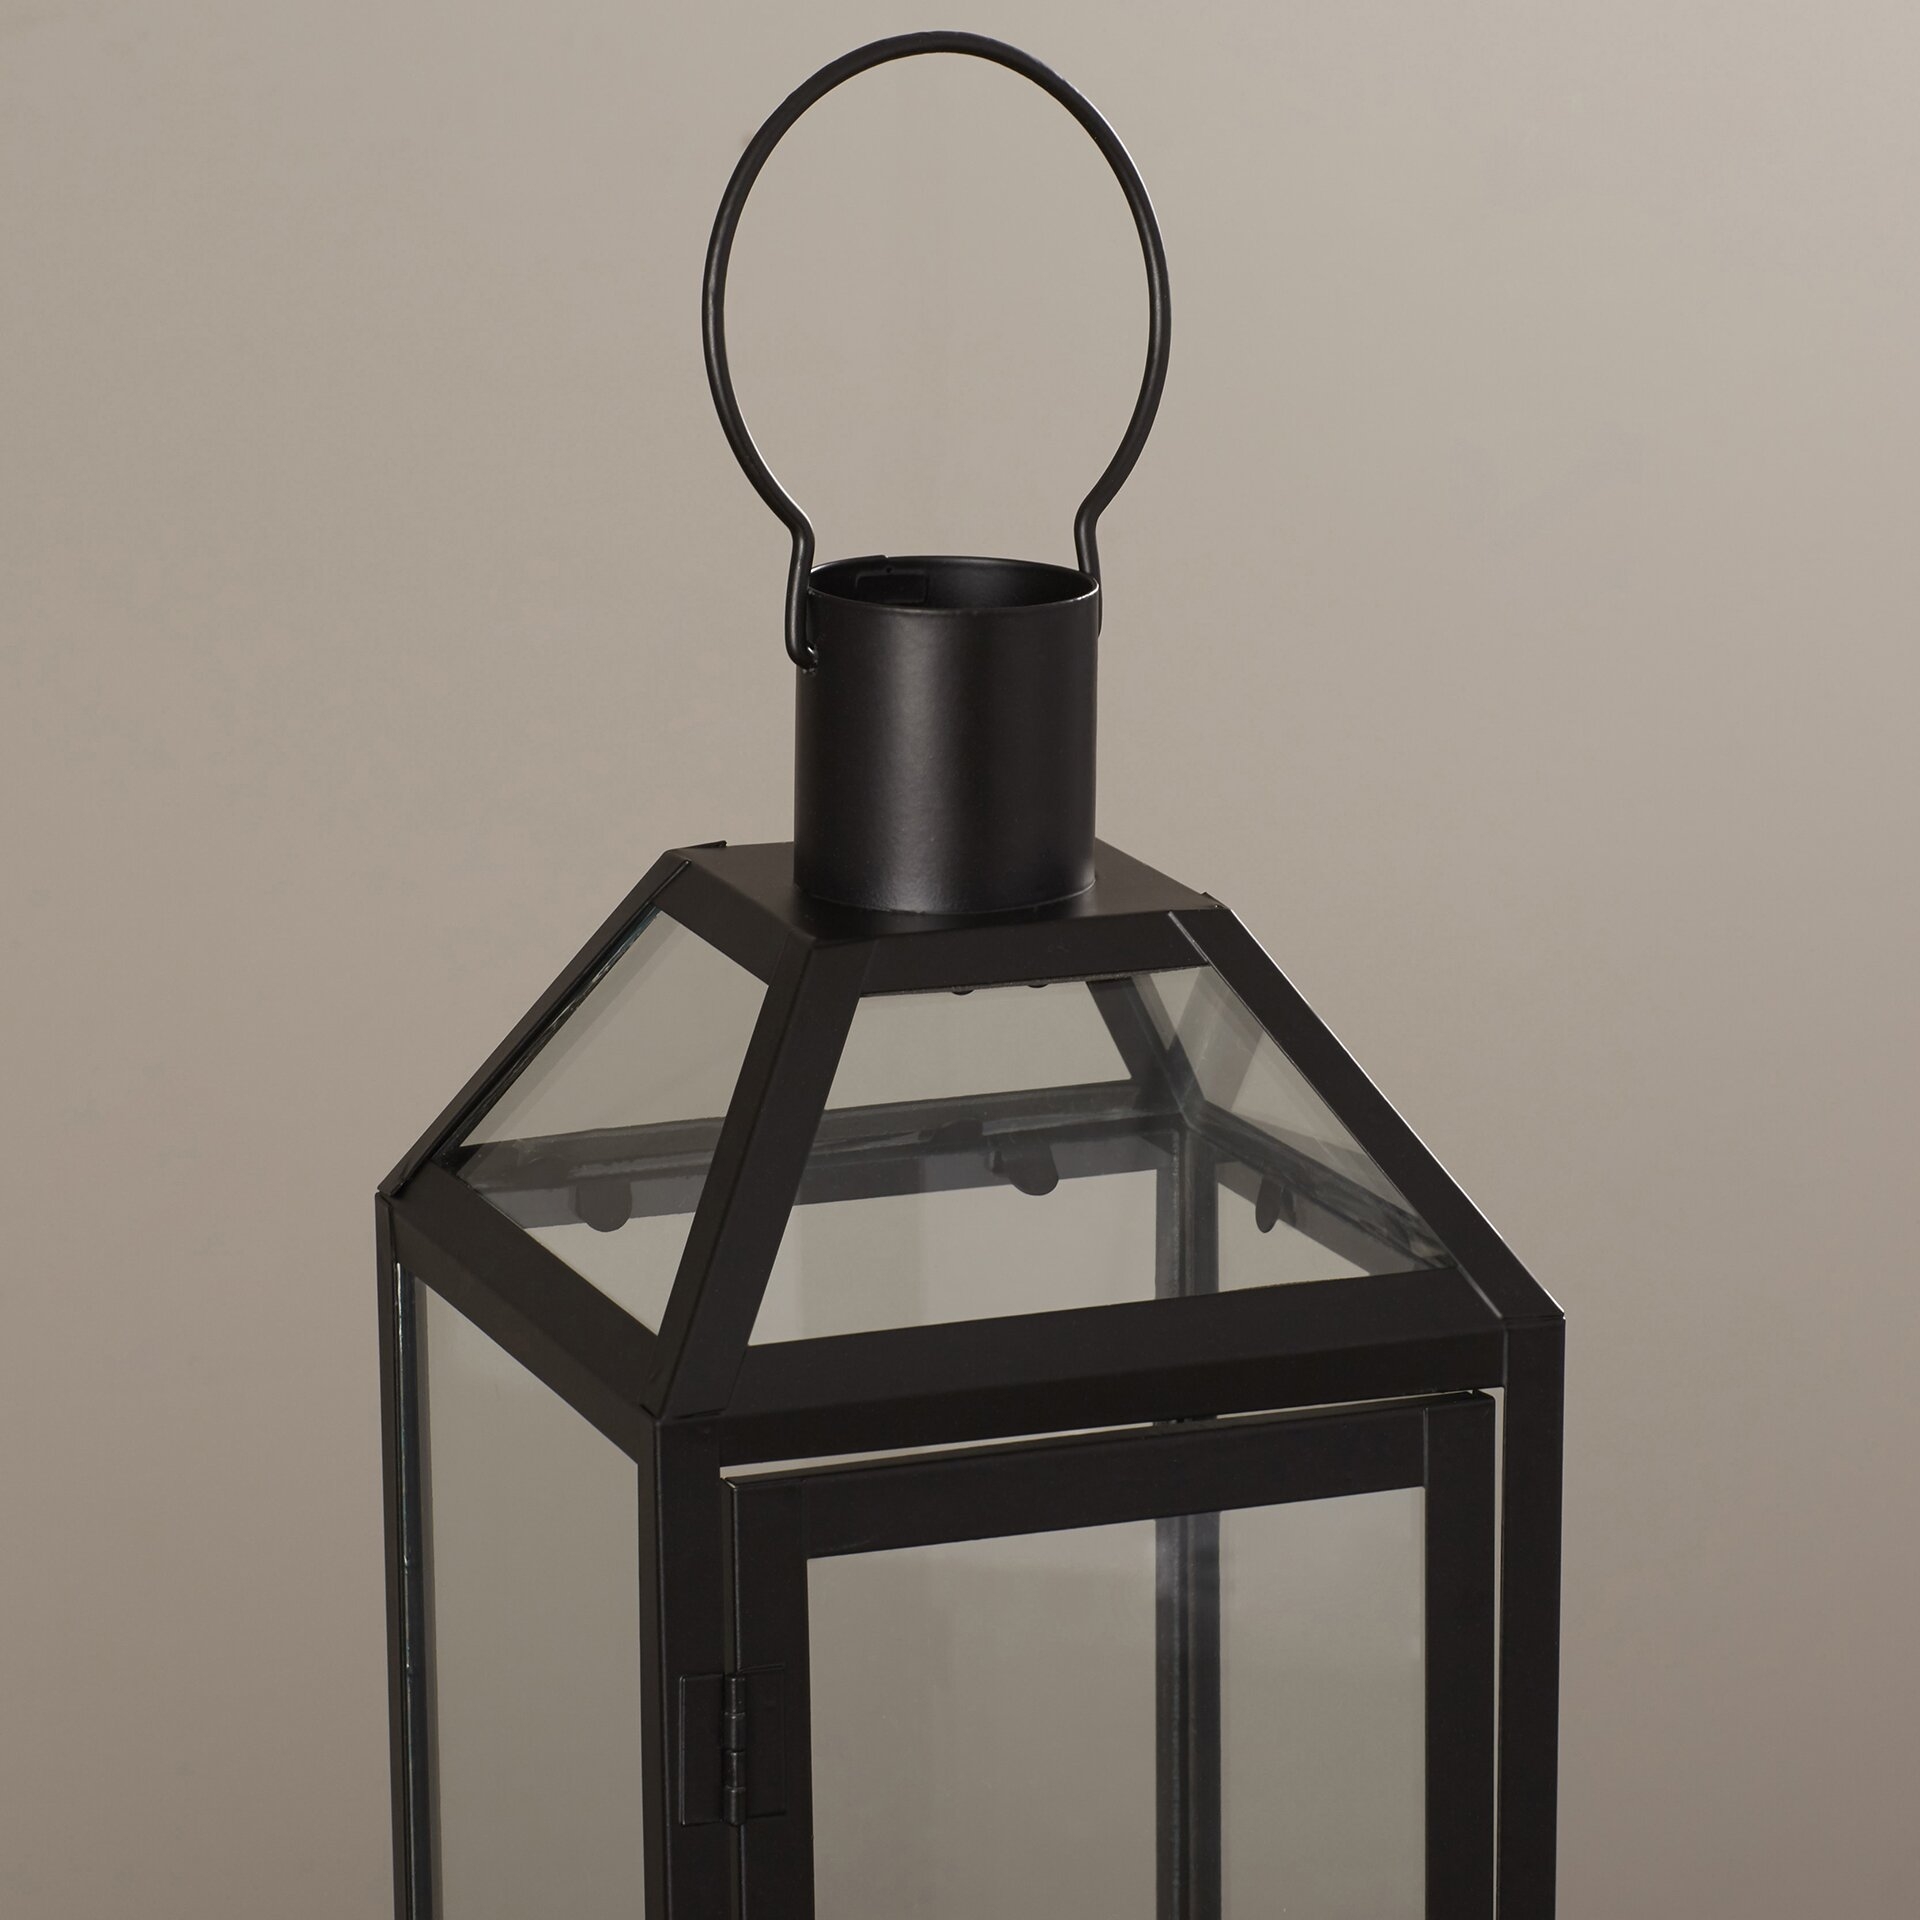 Tabletop Lantern, Black - Image 3